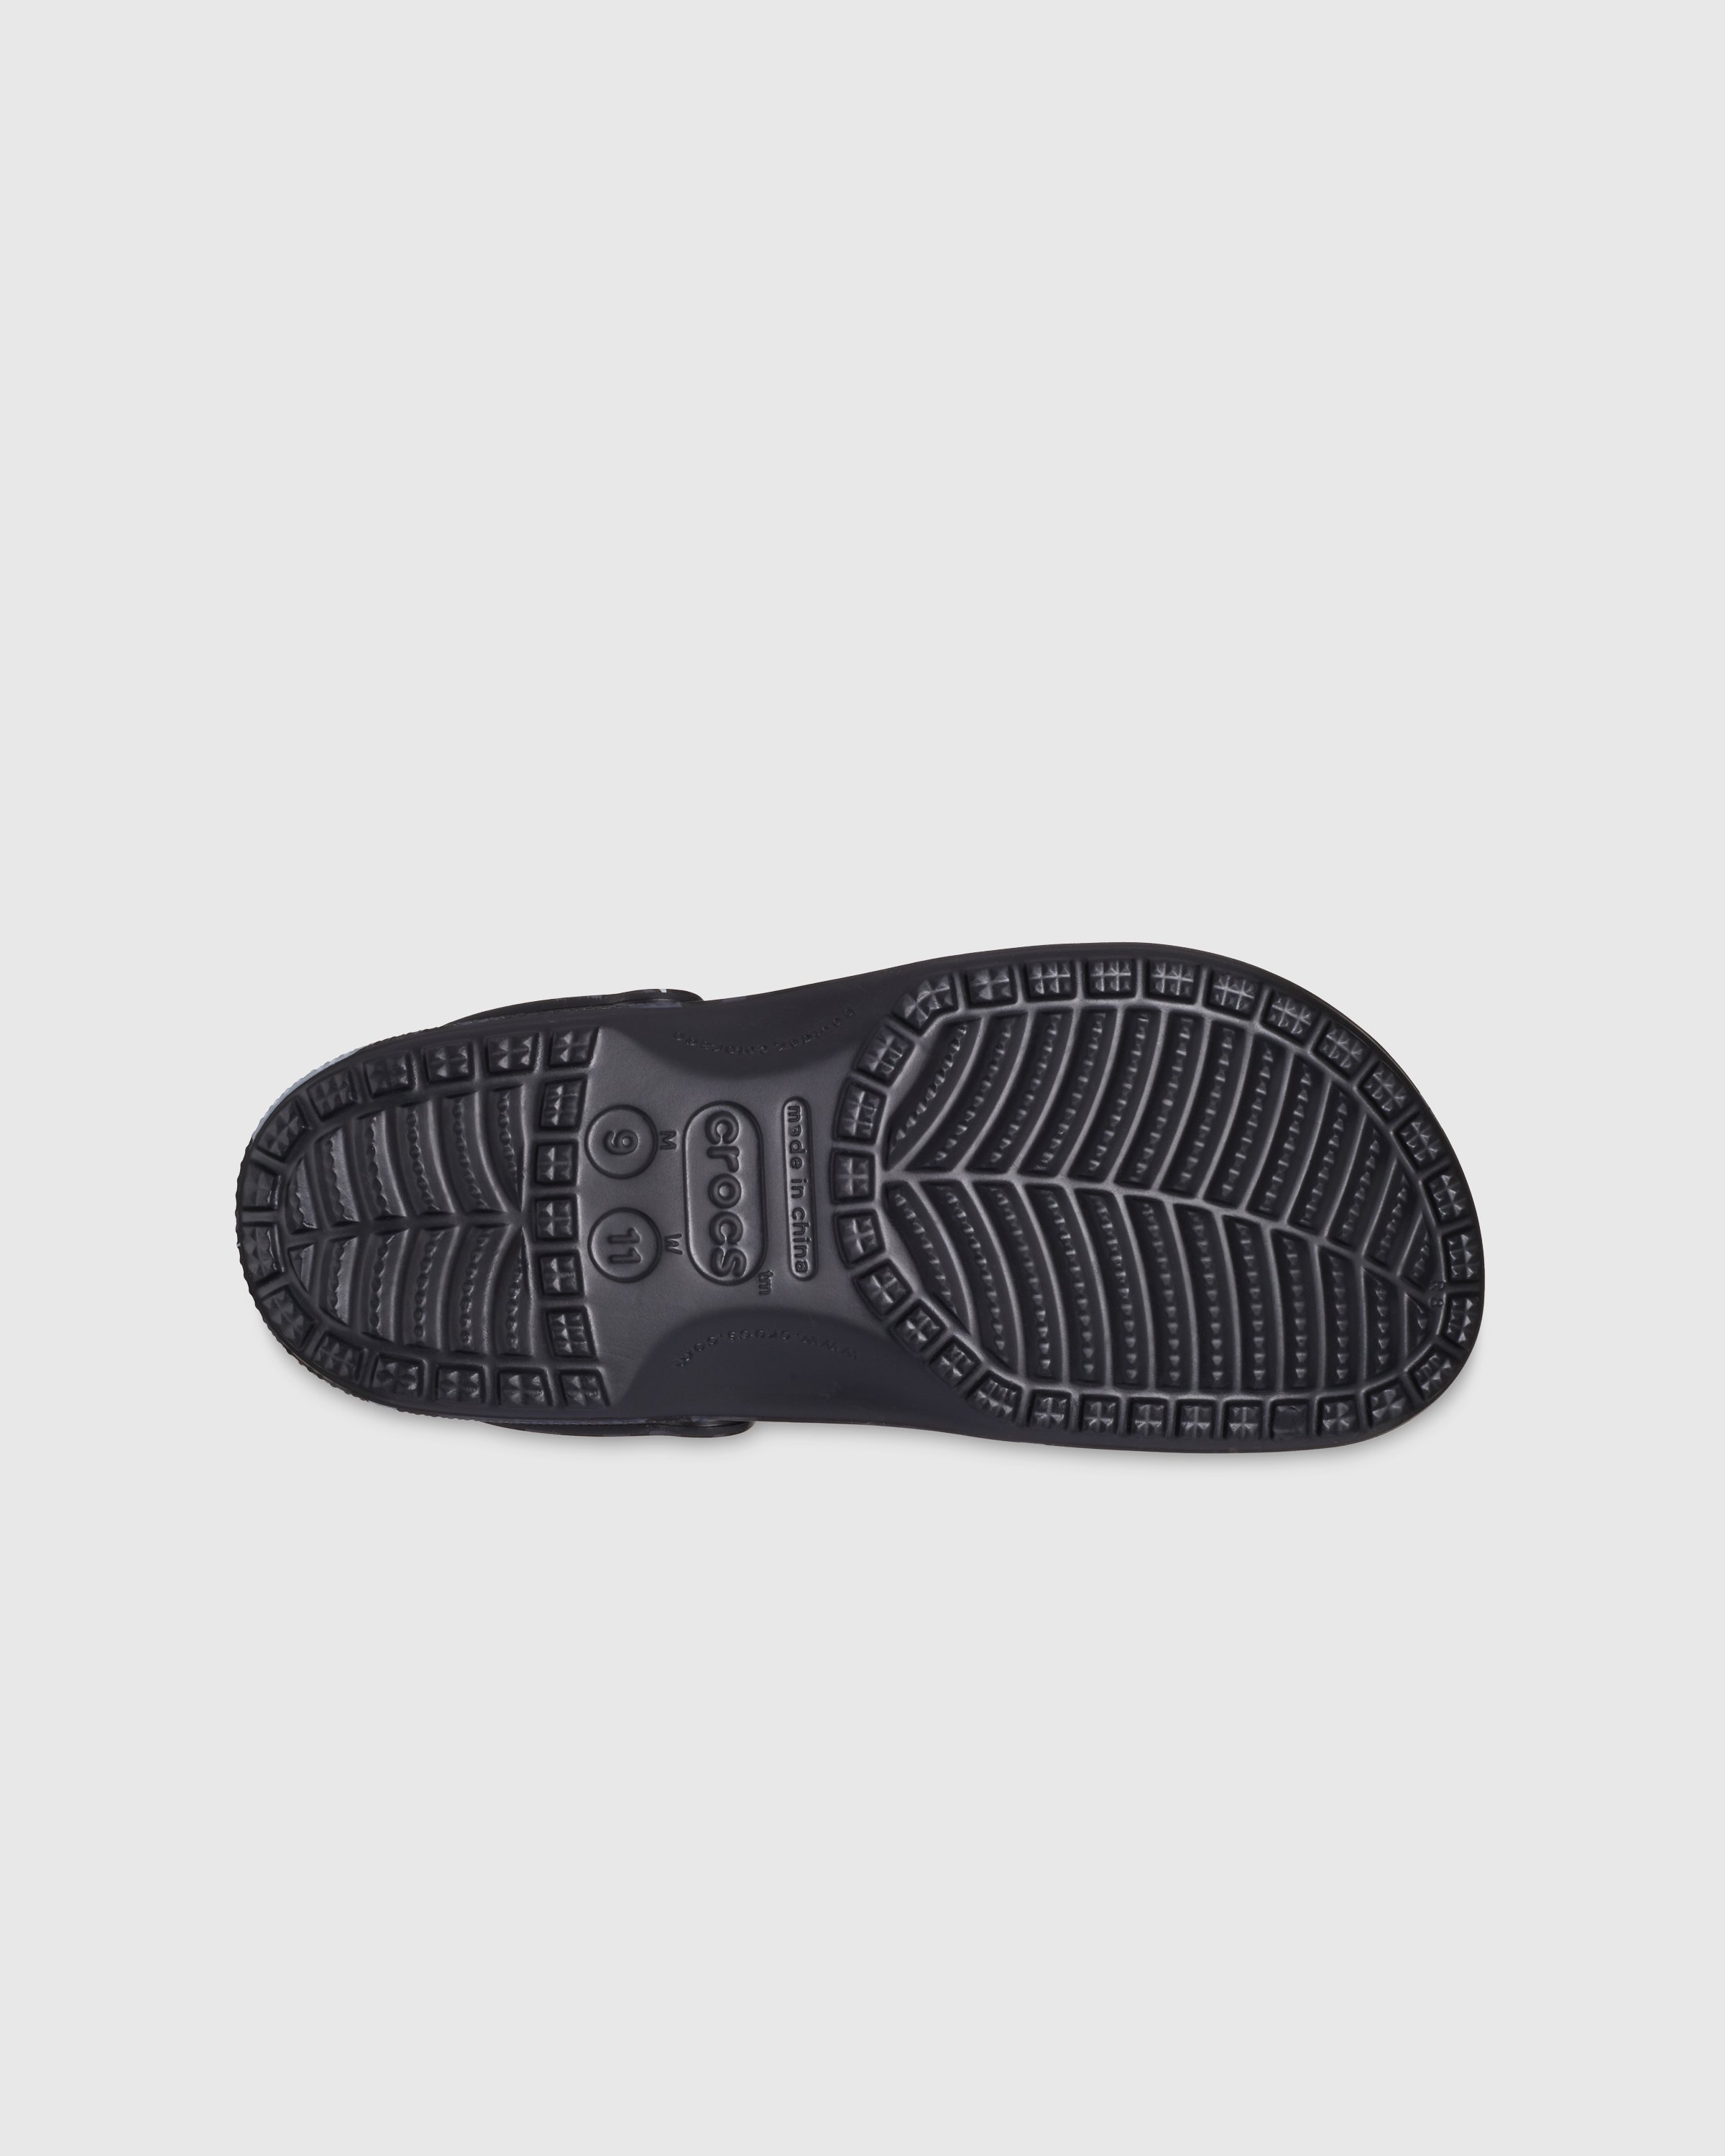 CLOT x Crocs - Classic Clog Black - Footwear - Black - Image 5